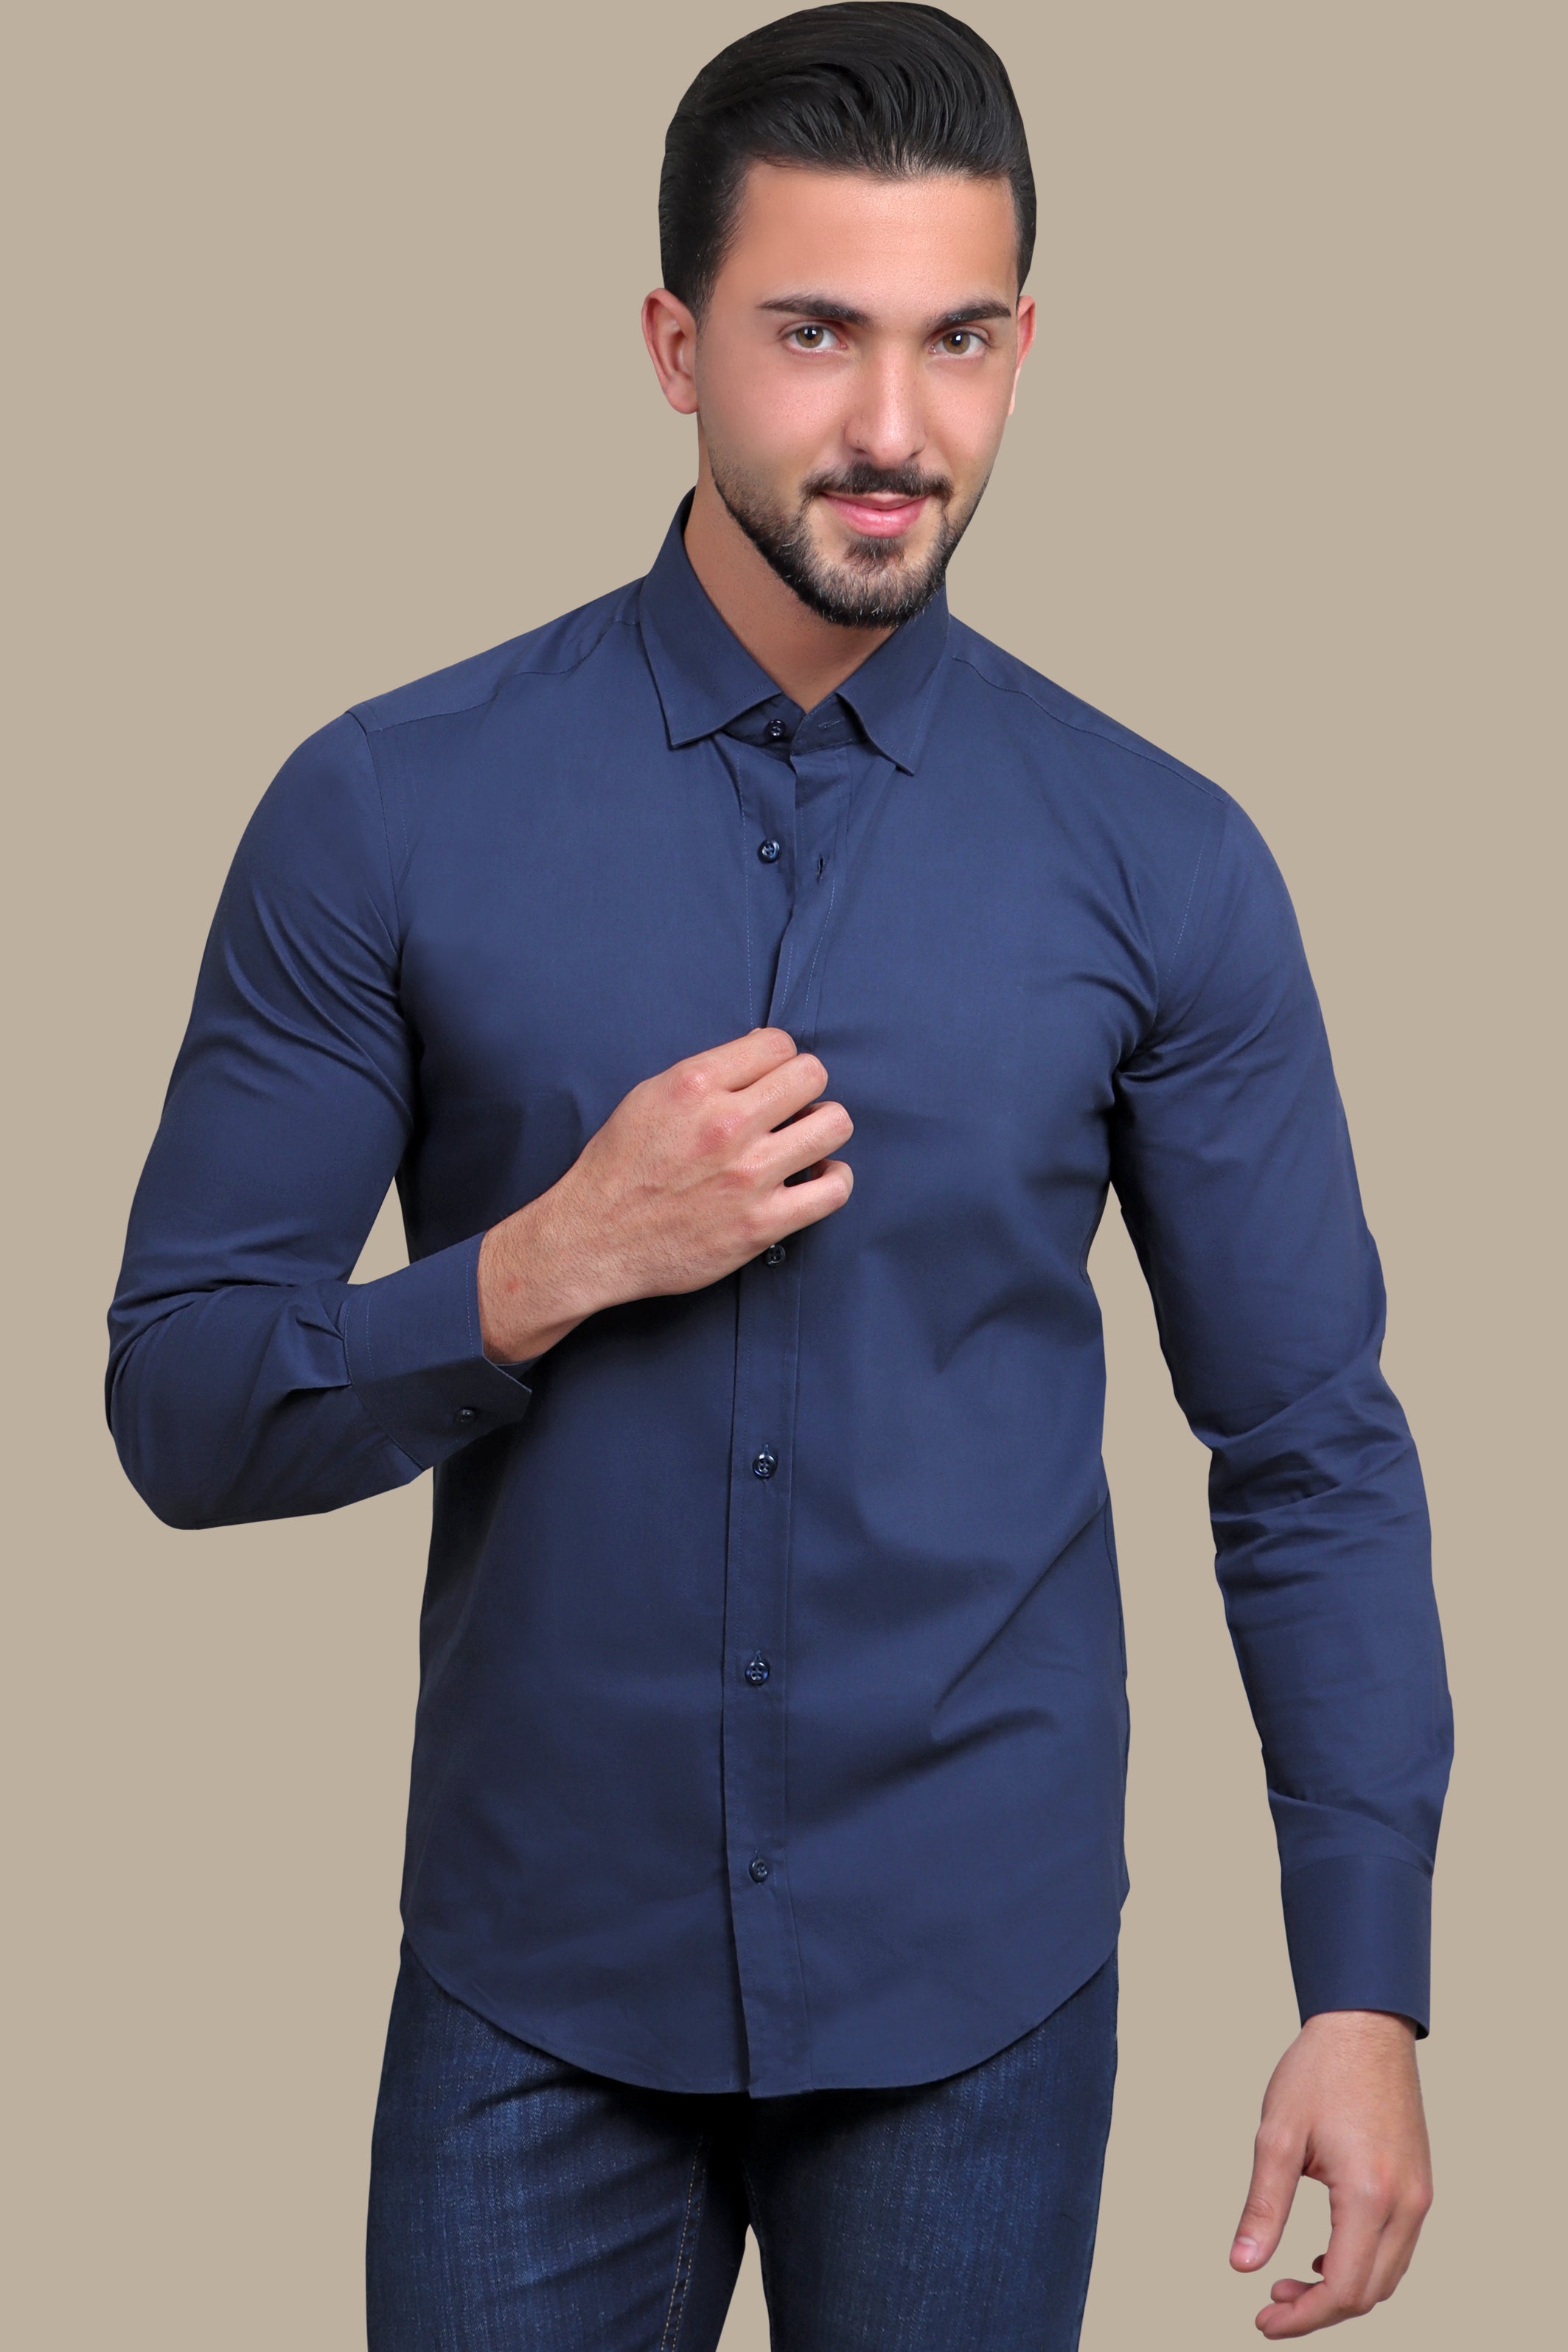 Navy Sophistication: Lycra Plain Shirt for Effortless Elegance